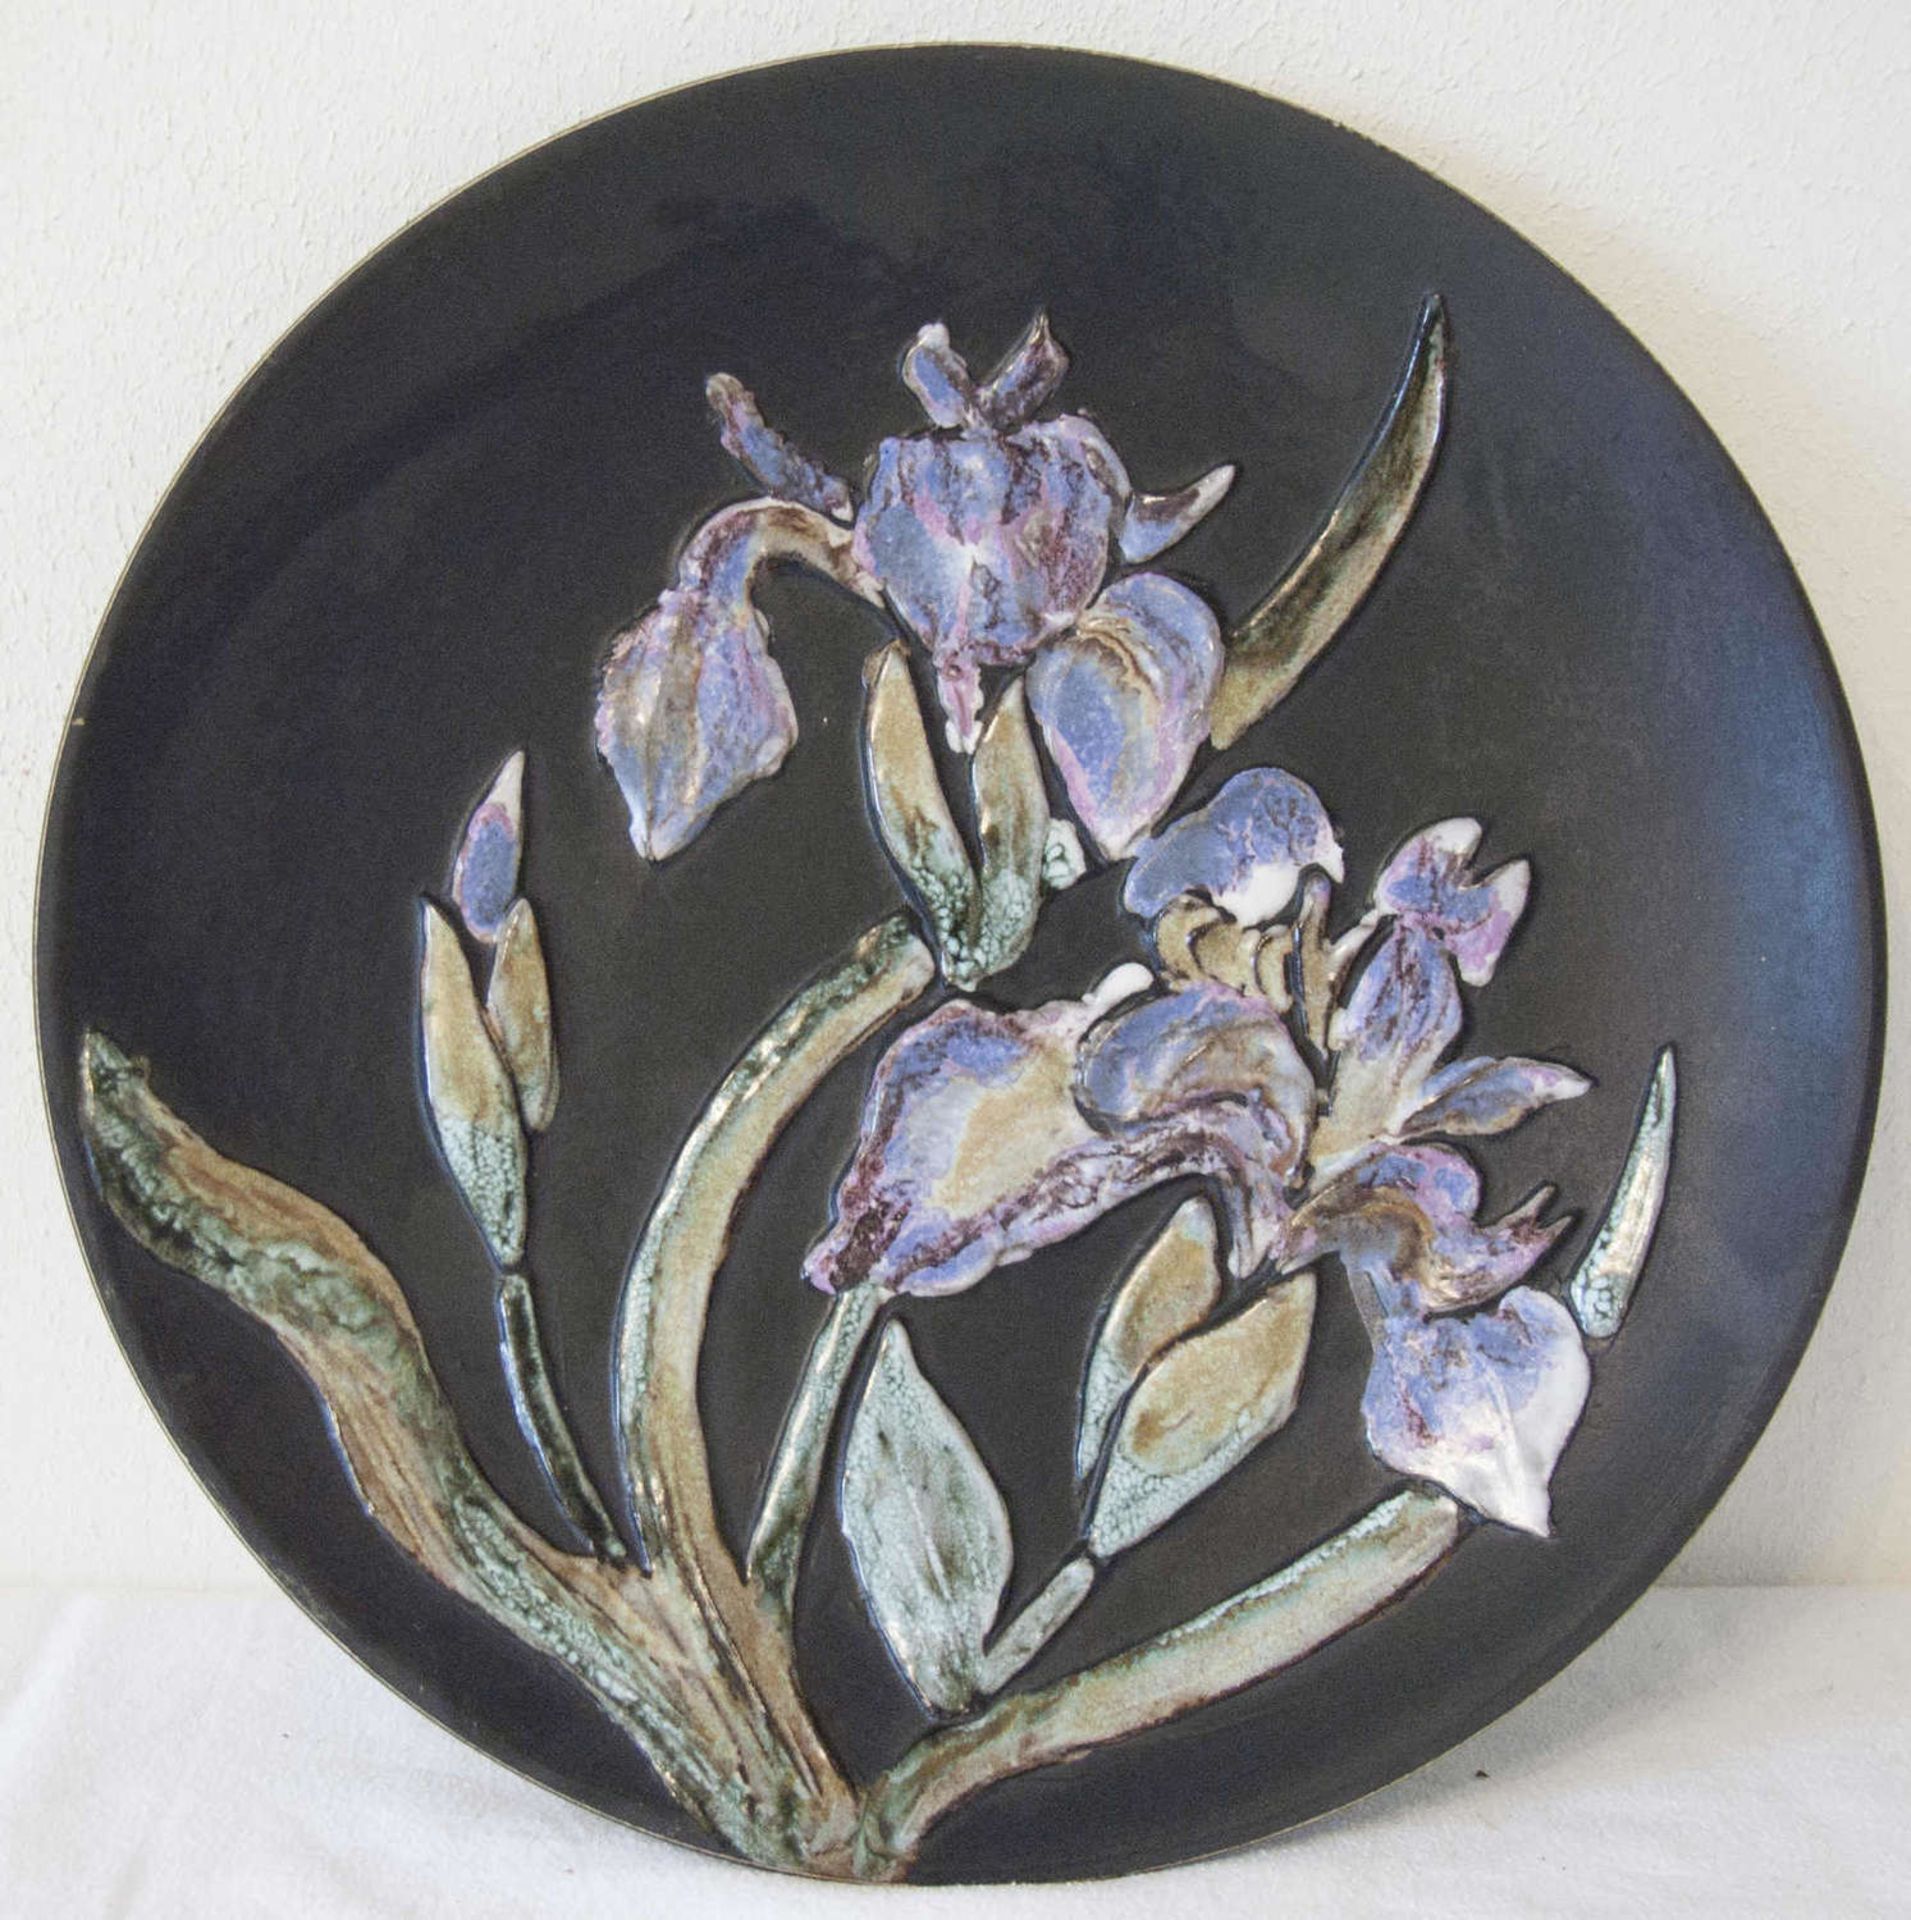 Keramik - Künstler - Teller, Durchmesser: ca. 36,5 cm. Florale, irisierende Aufschmelzungen. Sehr